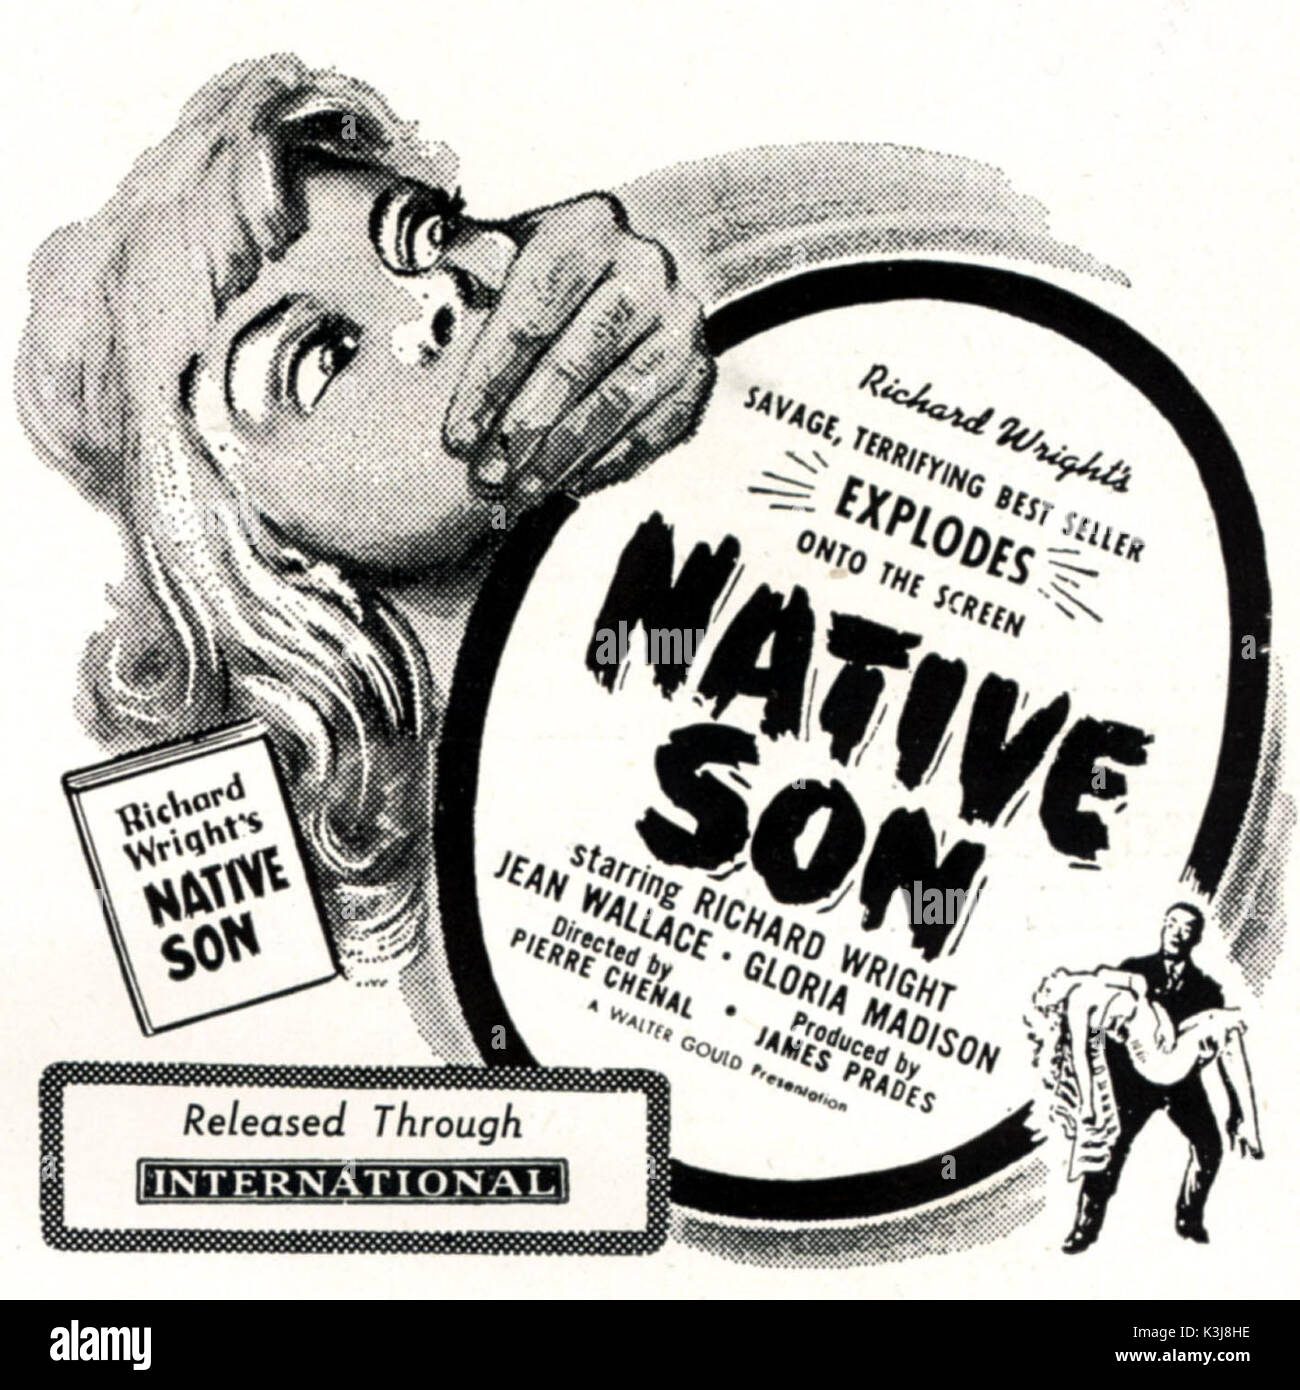 Figlio nativo figlio nativa data: 1951 Foto Stock